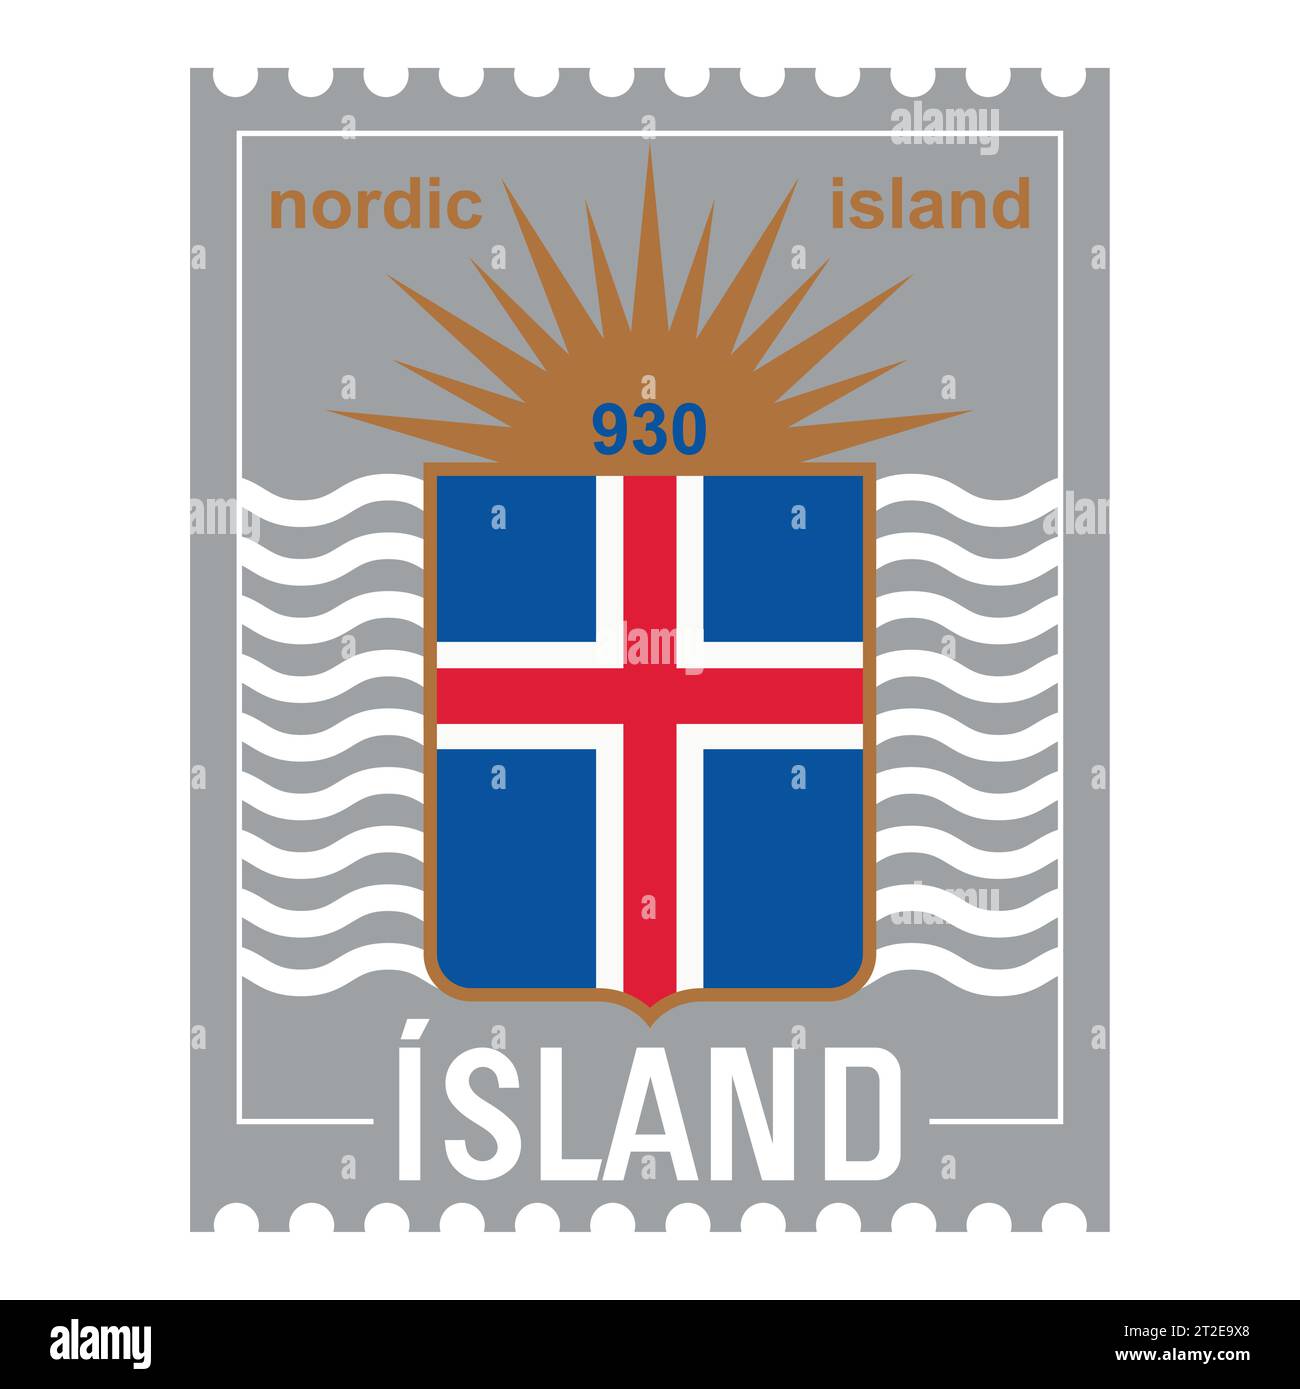 Design in stile vichingo. Bandiera islandese d'epoca e l'iscrizione Islanda Illustrazione Vettoriale